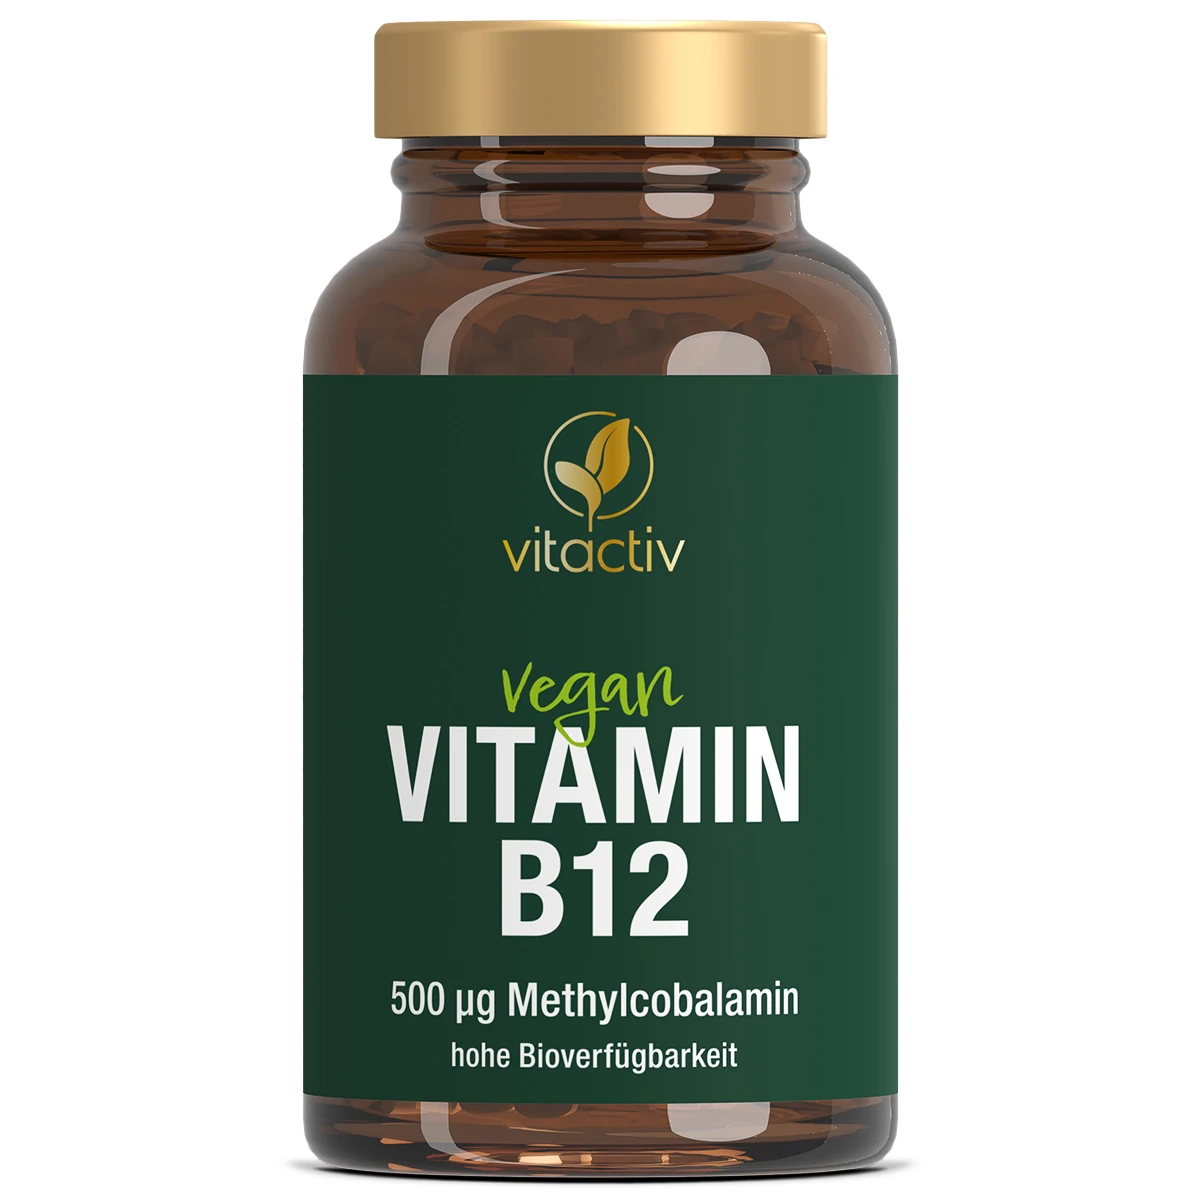 a830-vitamin-b12-19158643-01-produkt-1200px_1920x1920